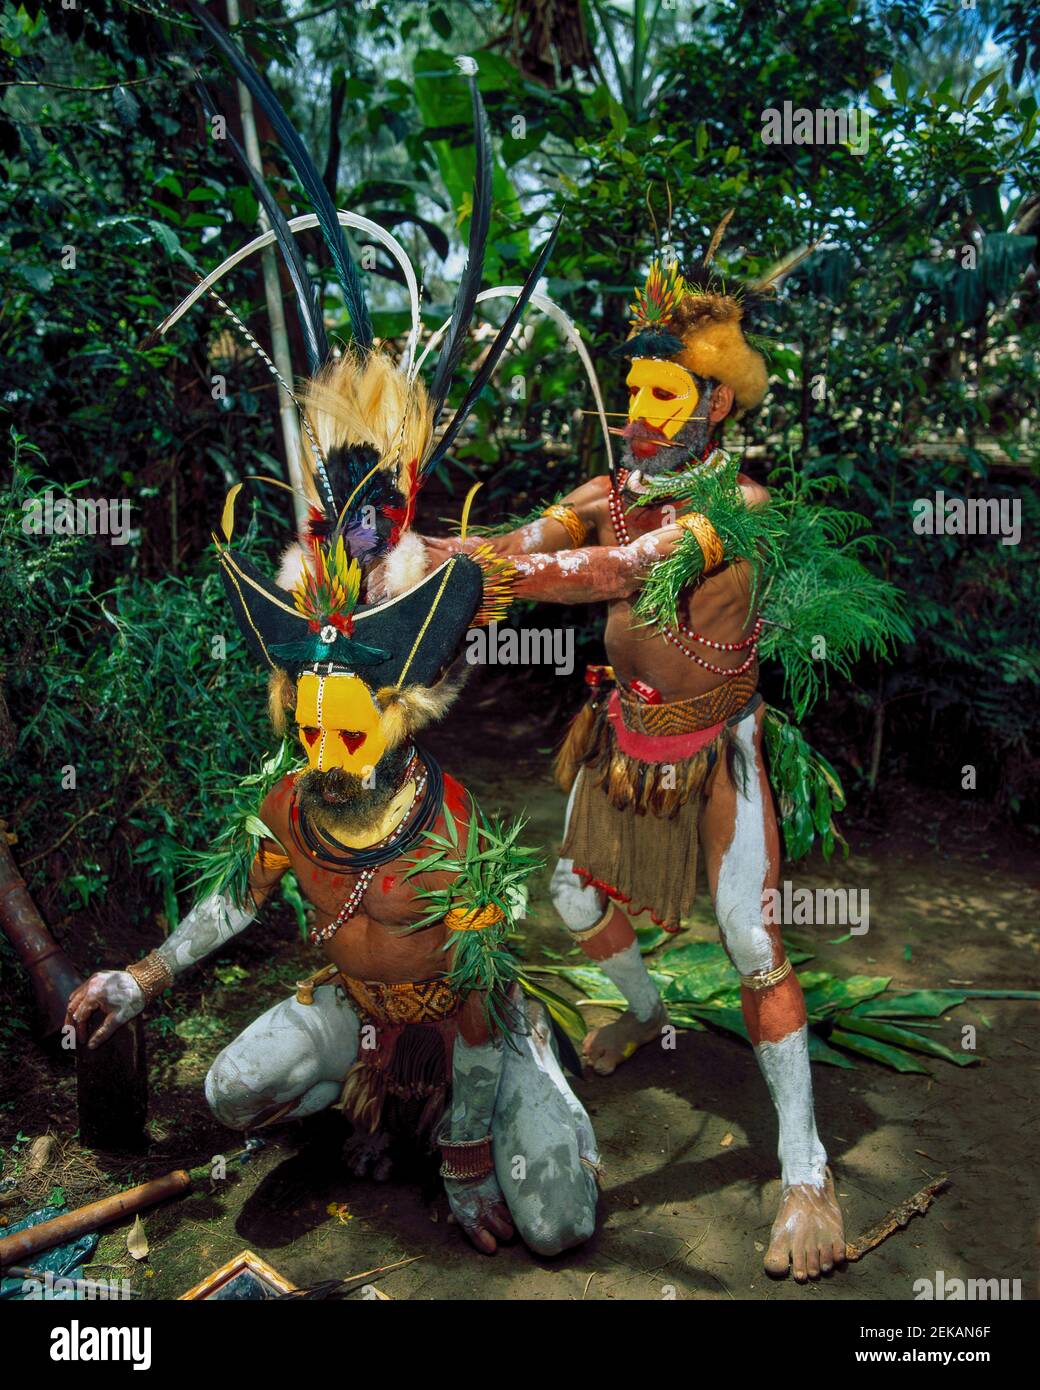 Der rote ockerfarbene und gelbe Ton der Huli, genannt 'ambua', gilt in ihrer Kultur als heilig. DAS HOCHLAND, PAPUA-NEUGUINEA: STAMMESANGEHÖRIGEN in vi Stockfoto